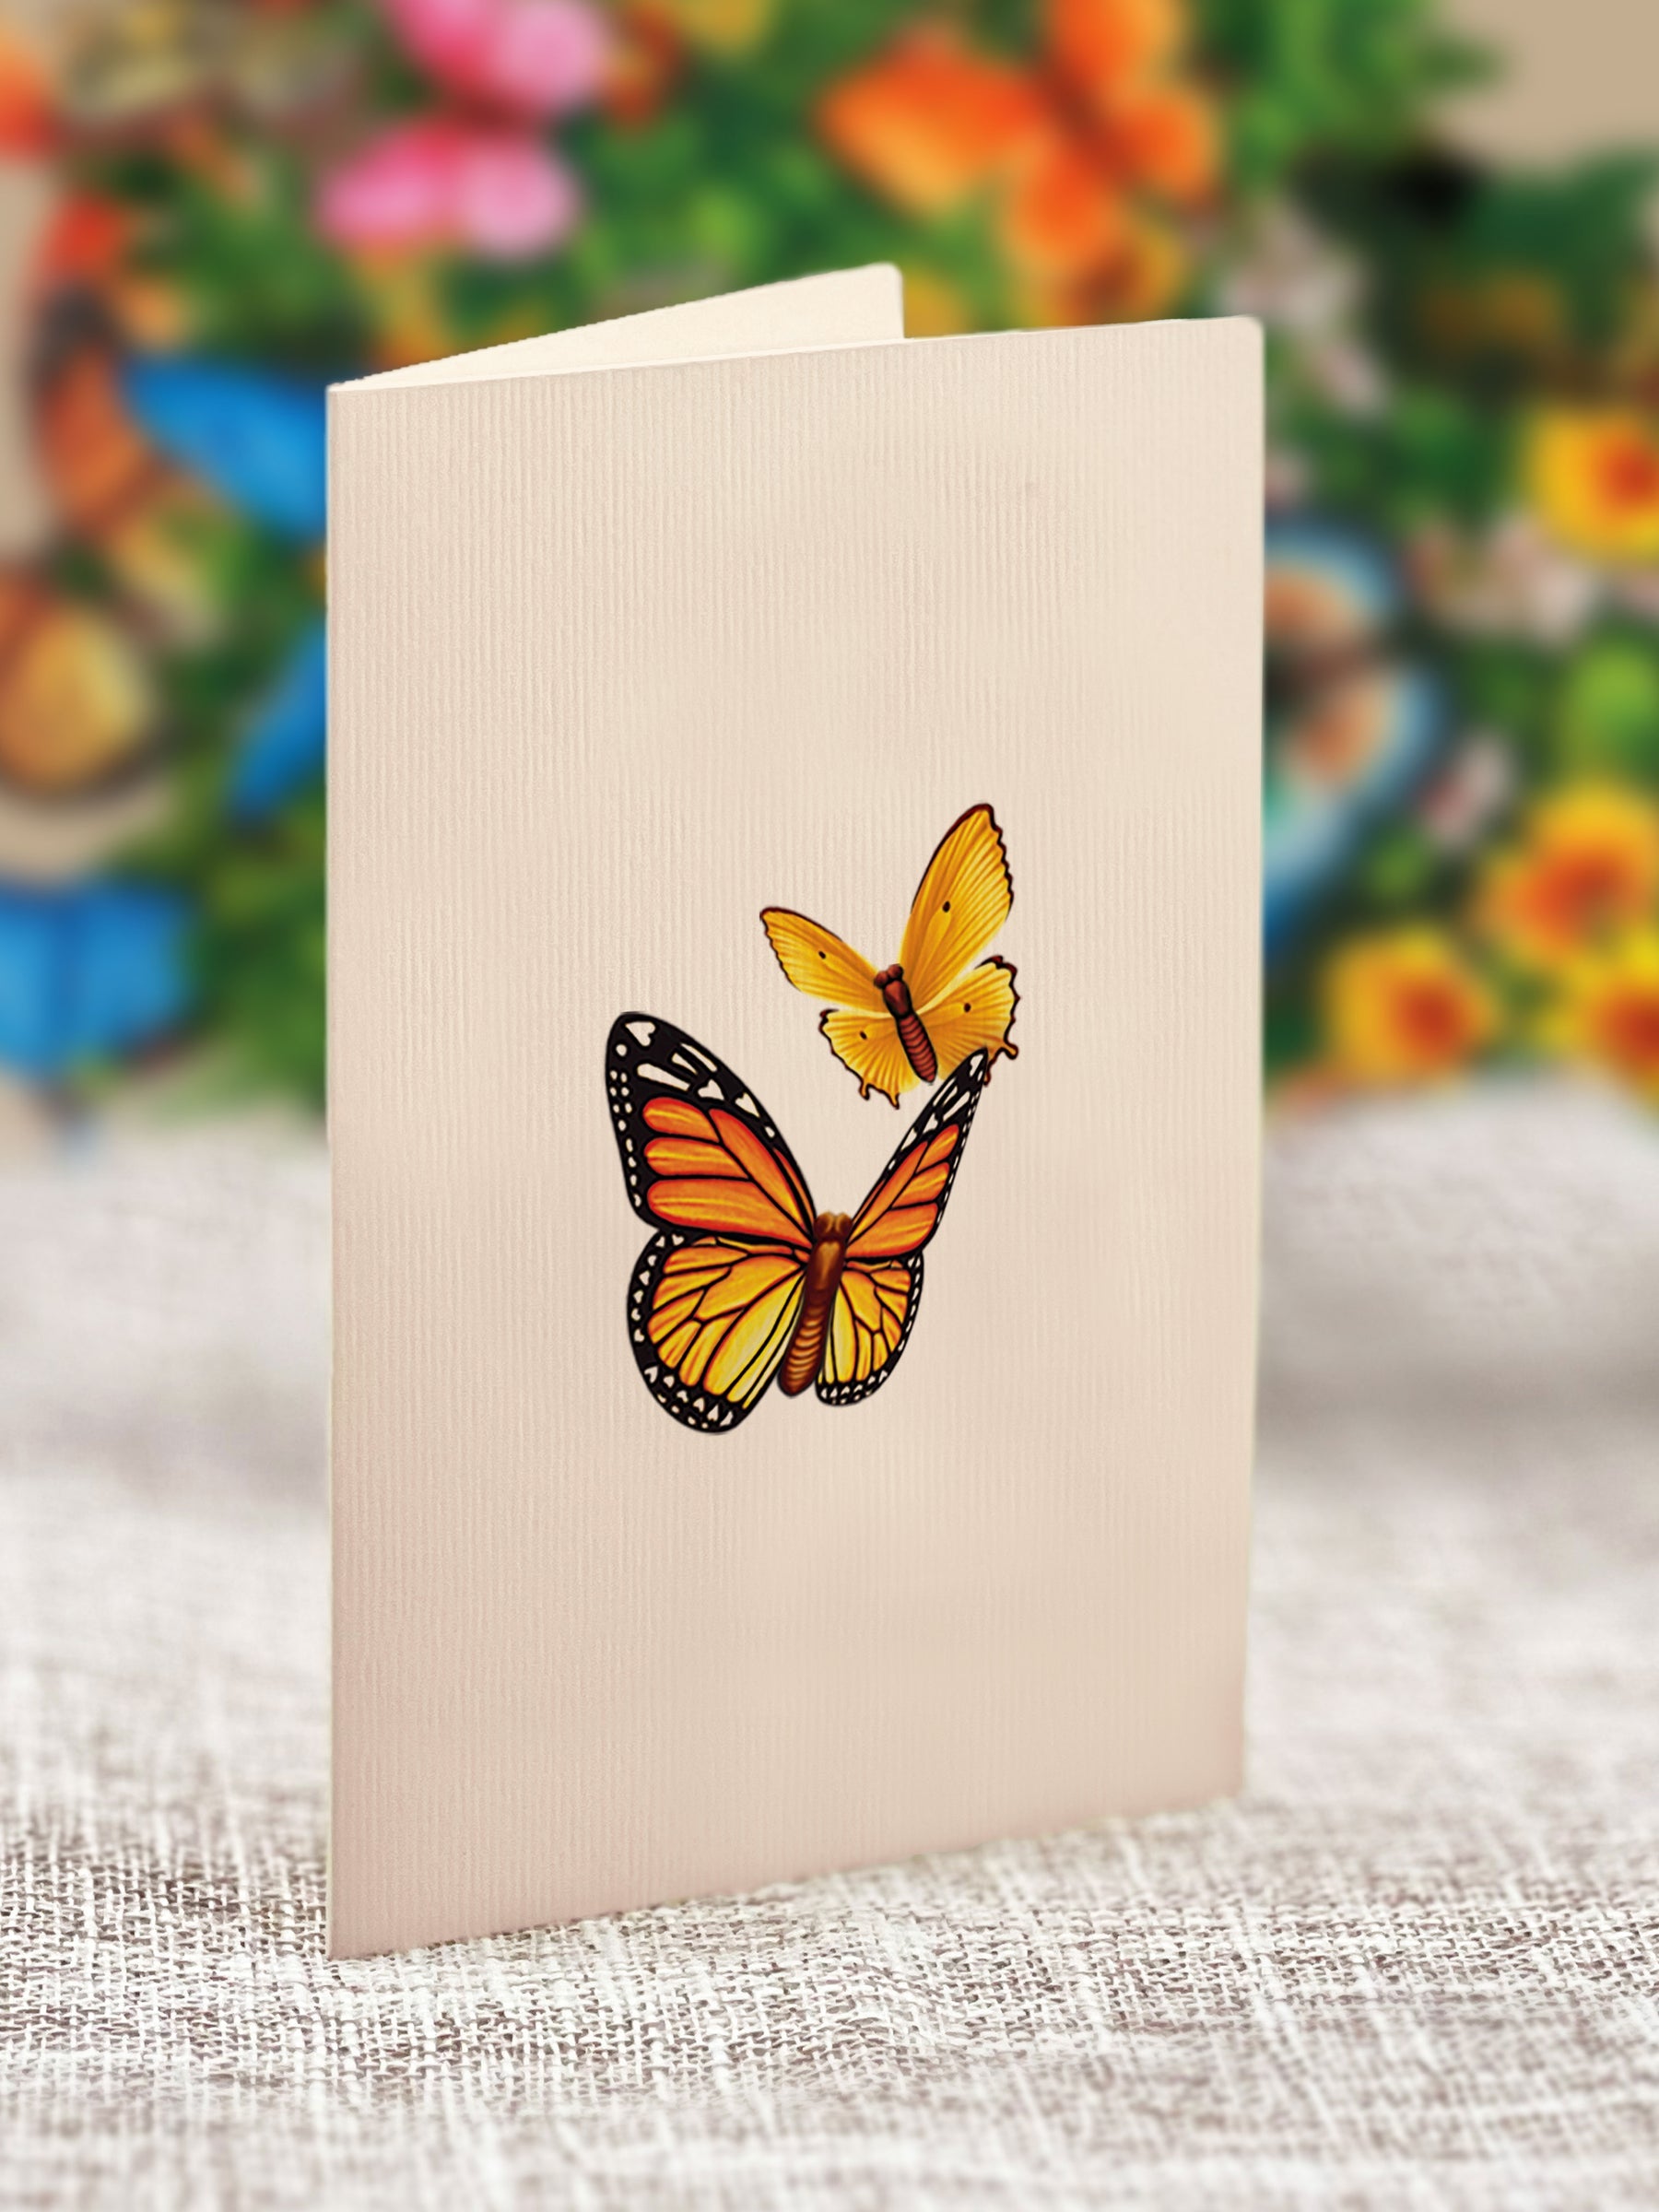 Fresh Cut Paper 3D Pop Up Flower Greeting Note Card – Butterflies & Buttercups – 6" x 5"